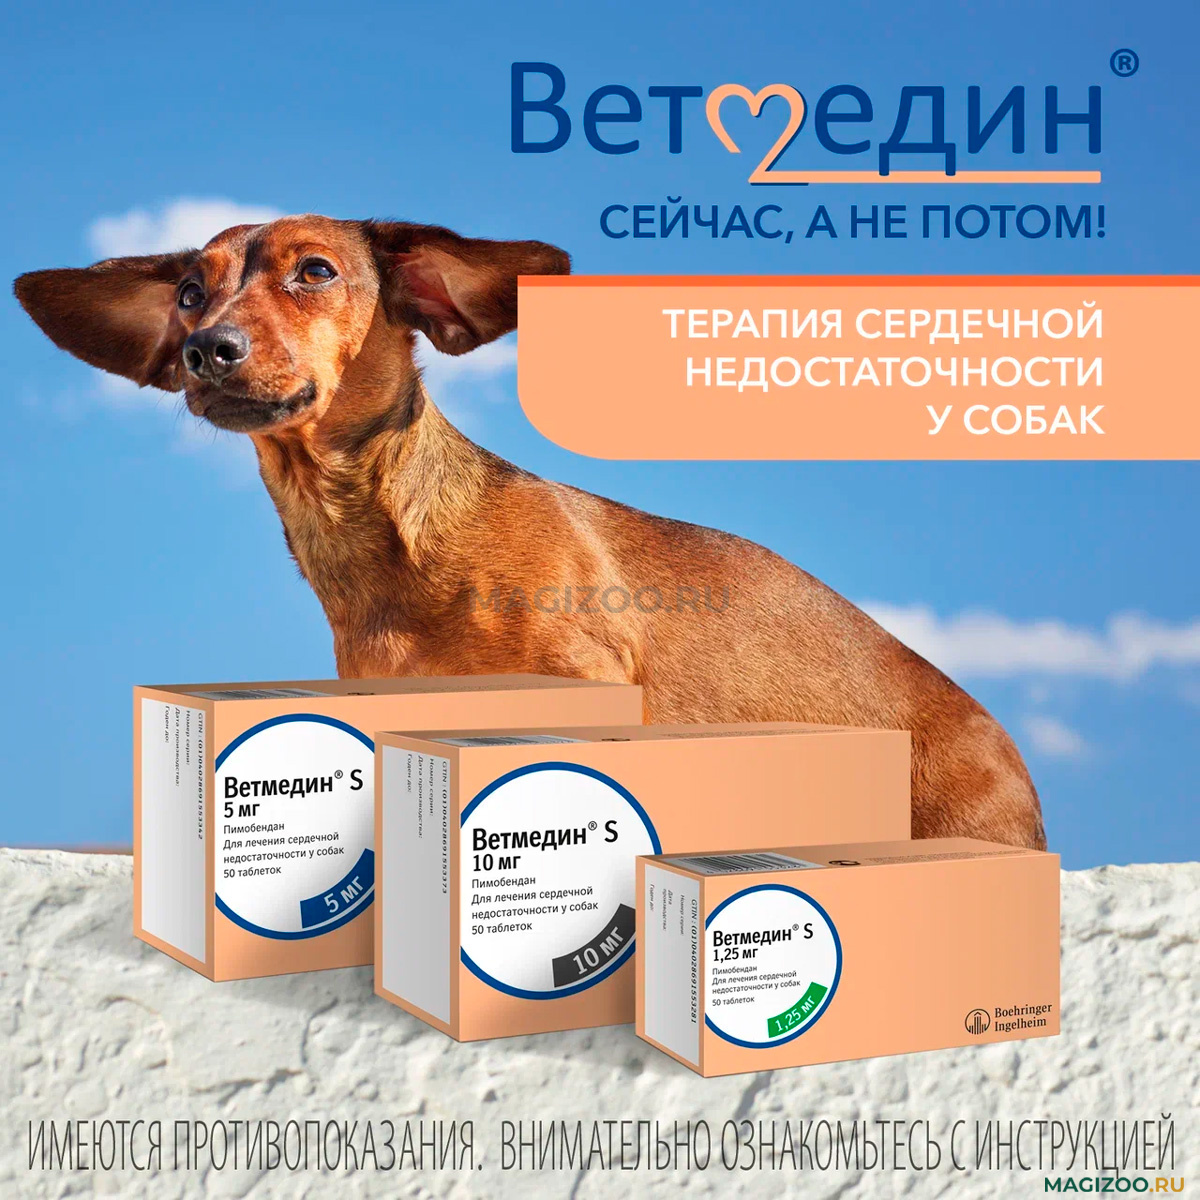 Купить Ветмедин 10 мг, цена таблеток Vetmedin в интернет-магазине в Москве